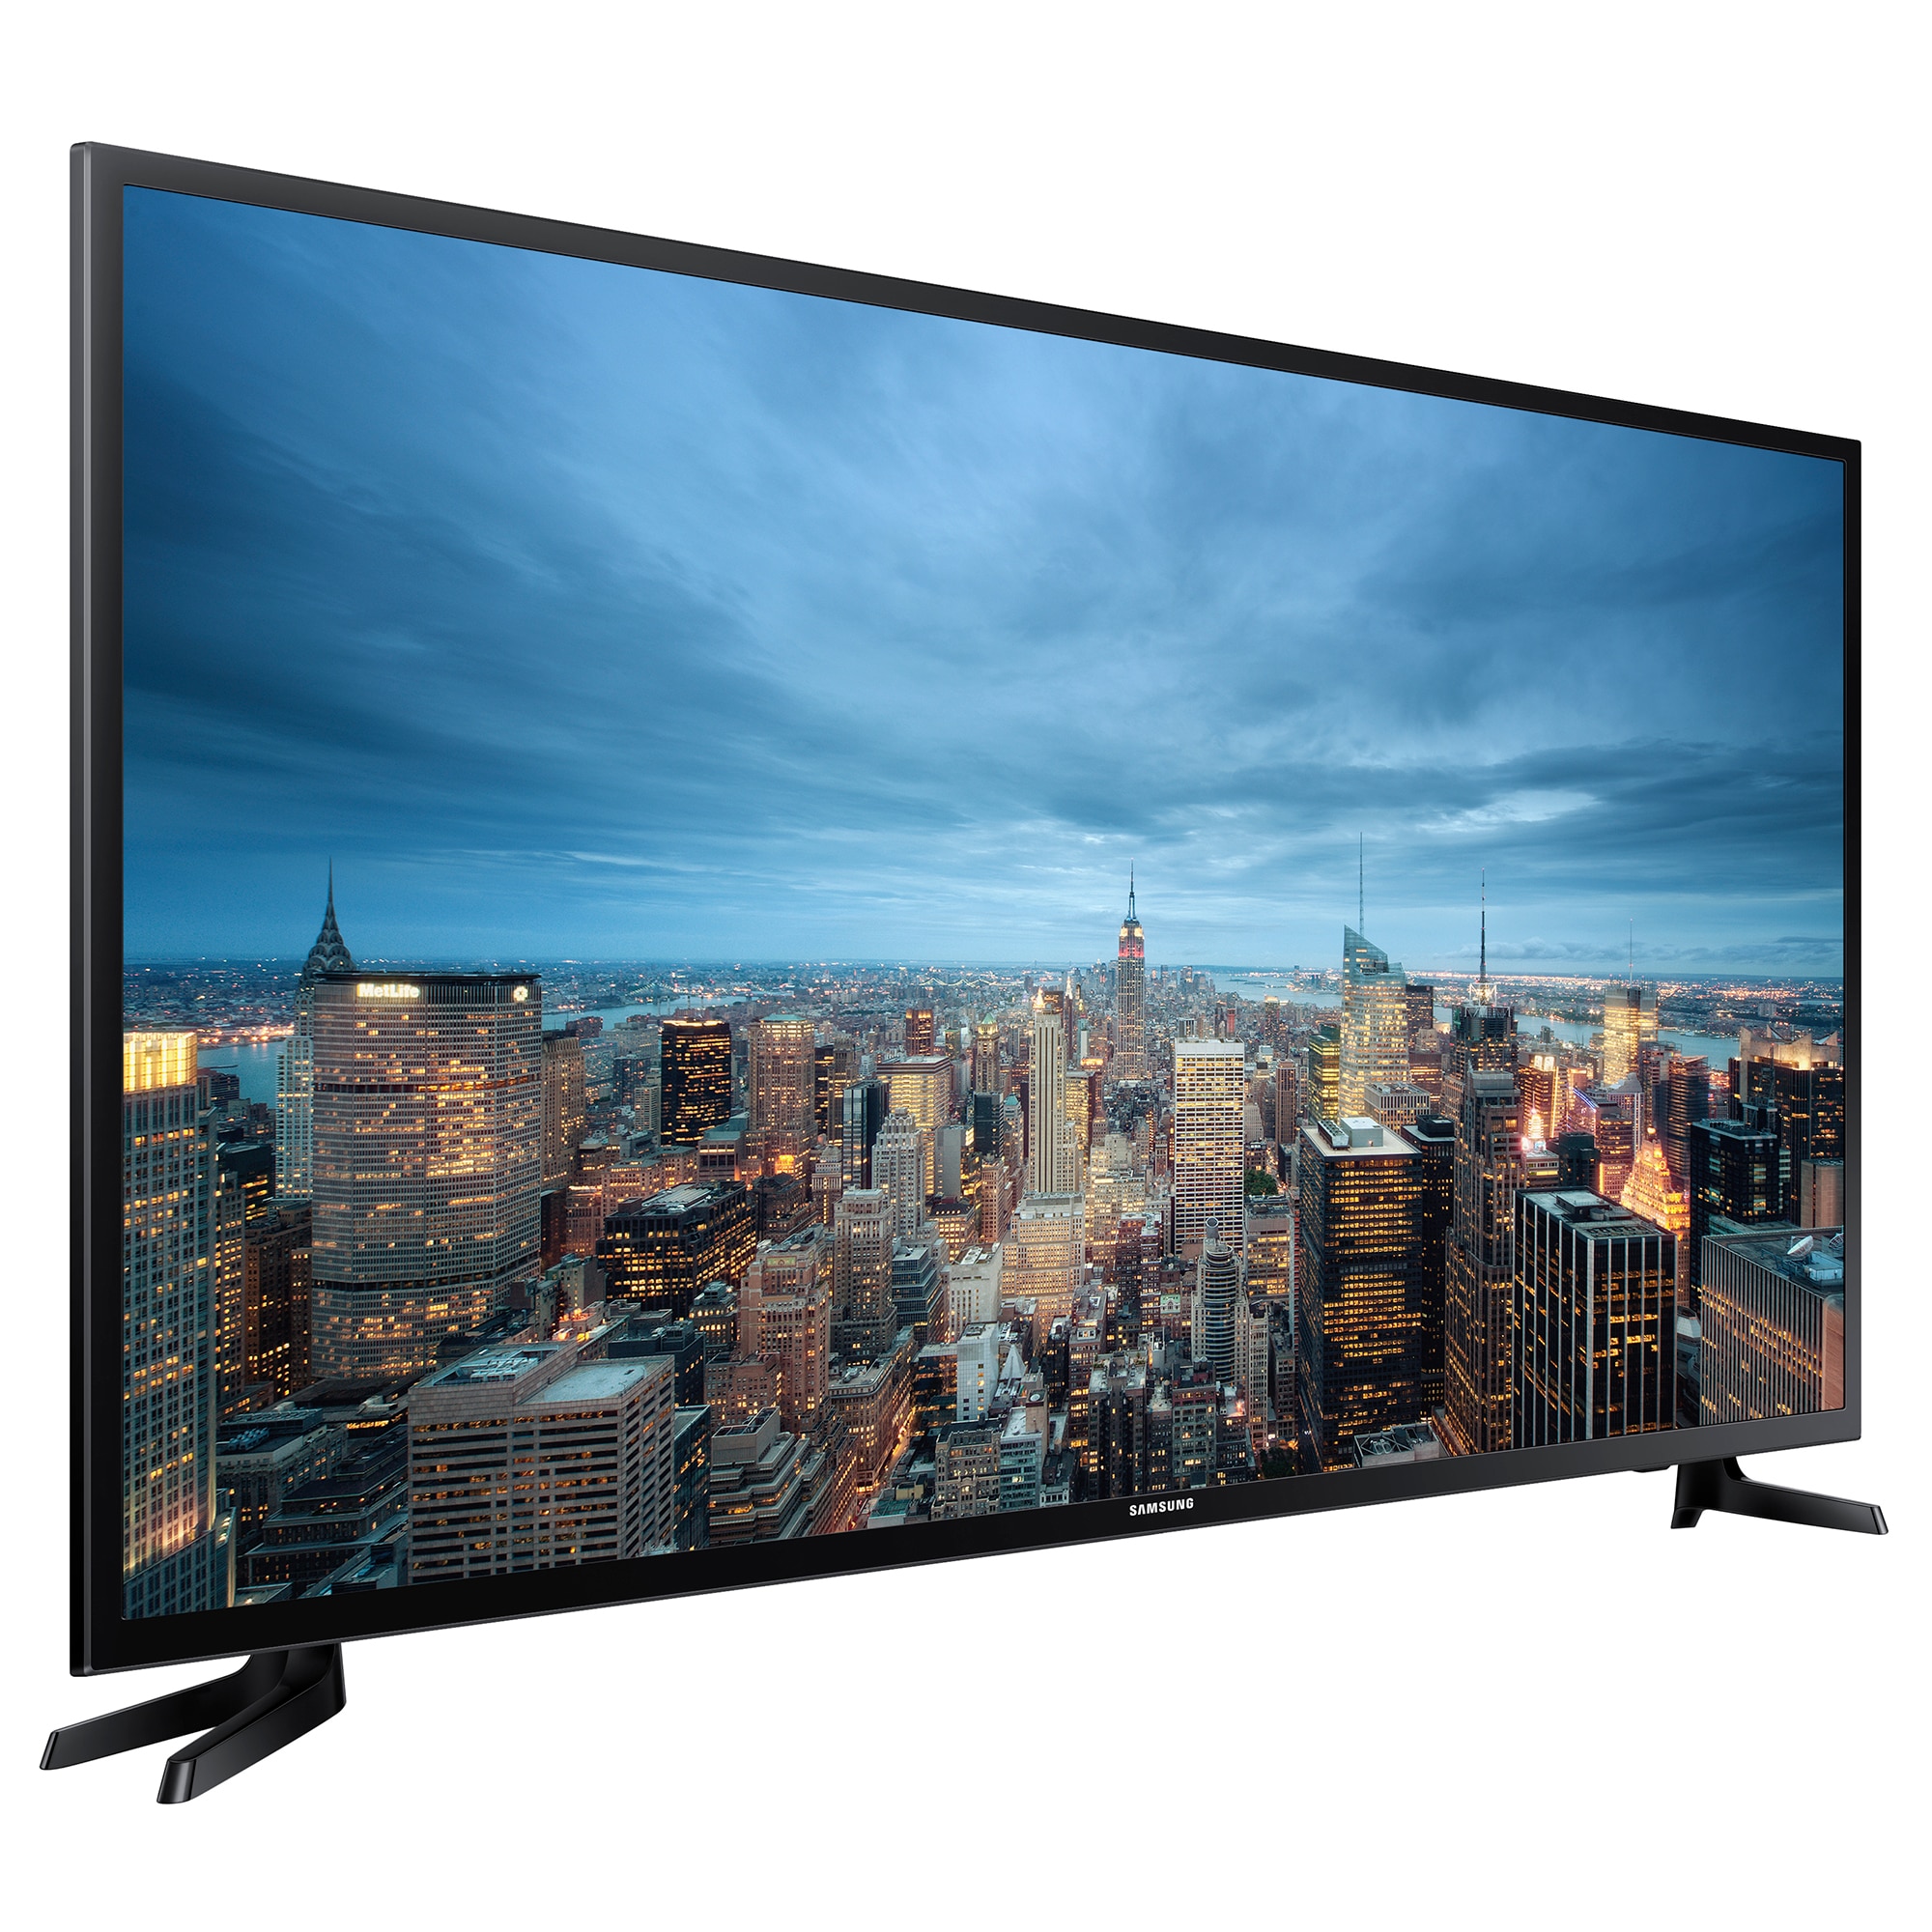 Цена телевизора екатеринбург. Samsung ue55ju6530u. Samsung ue43ju6000u. Samsung Smart TV 40. Телевизор Samsung ue48ju6000u 48" (2015).